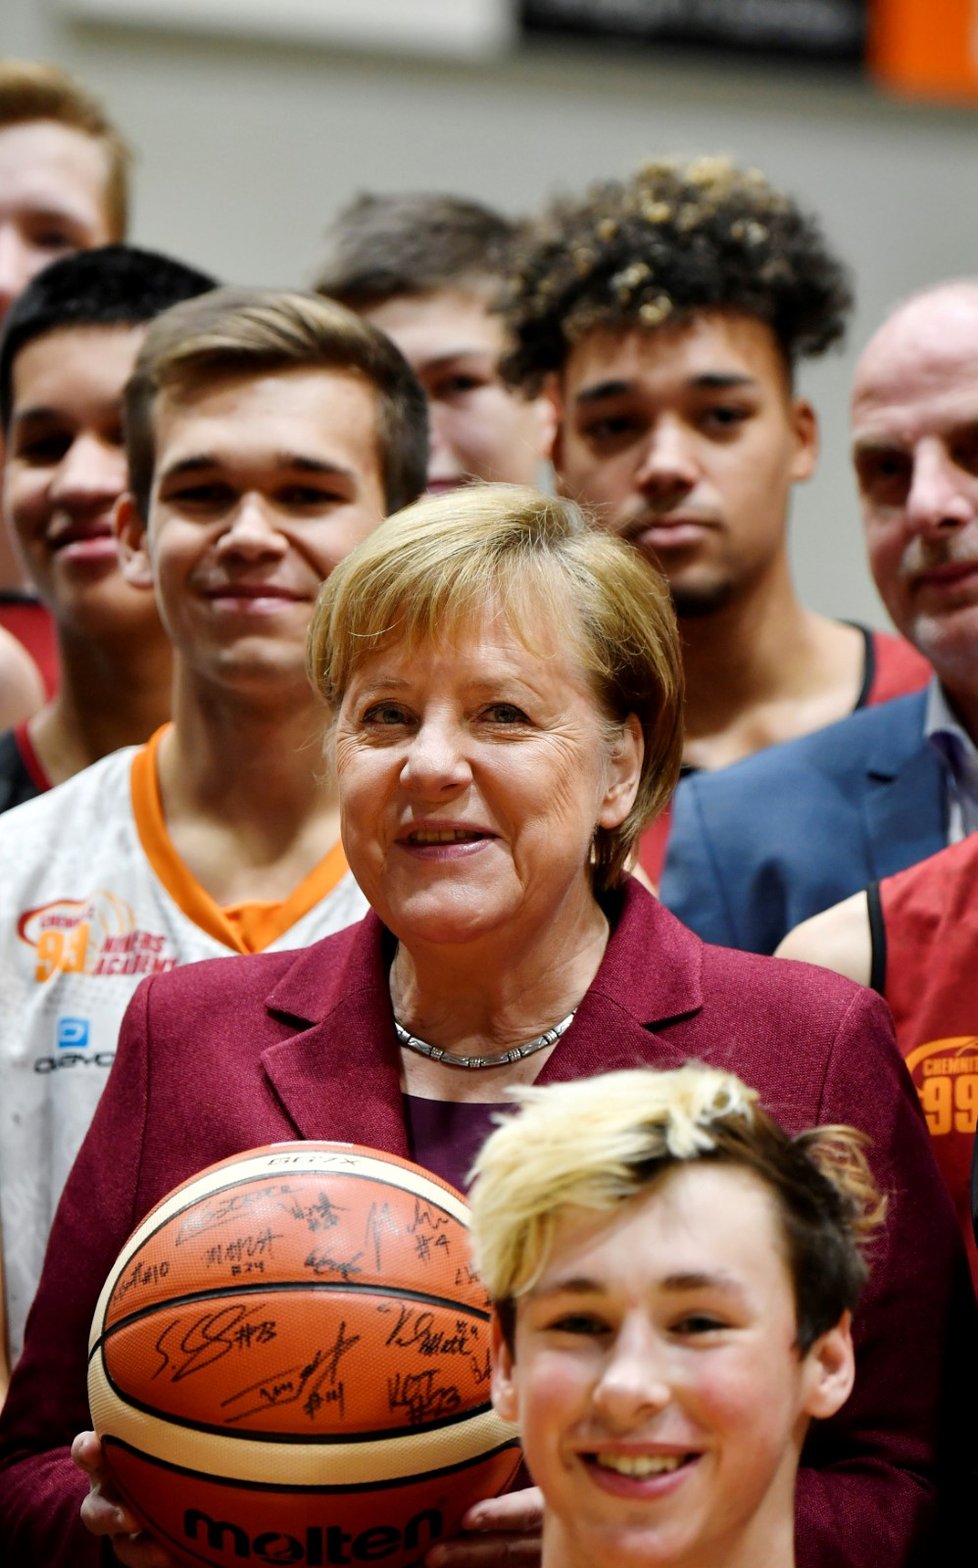 Merkelová na návštěvě saského města Chemnitzu uznala, že její vláda v migrační politice chybovala. Včas se podle ní nezajímala o země původu migrantů.